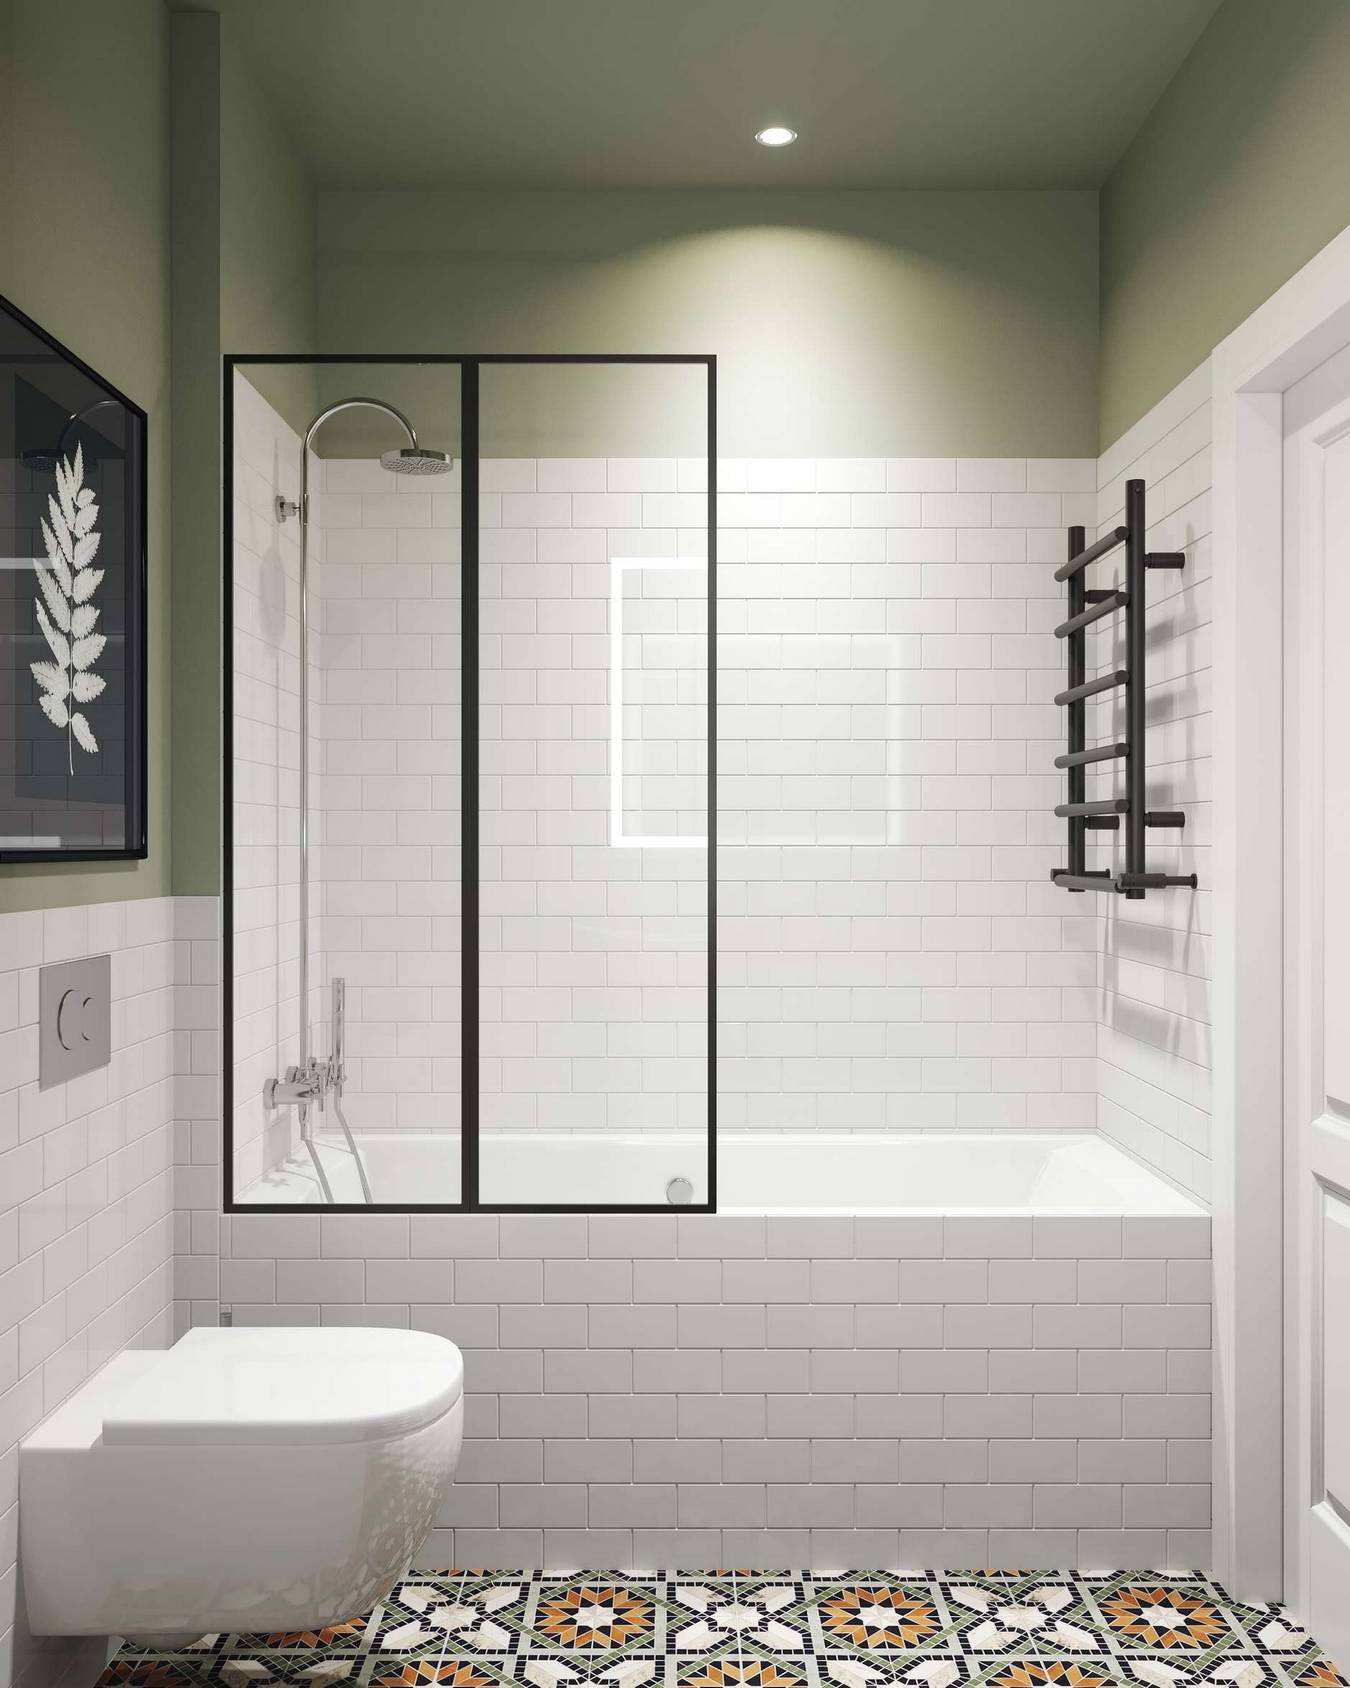 Bức tường phòng tắm chia thành 2 phần, 1 phần ốp gạch trắng sáng bóng, phần trên sơn màu xanh ô liu làm điểm nhấn. Toilet gắn tường giải phóng bề mặt sàn nhà, bồn tắm phân vùng với nhà vệ sinh bằng cửa kính trong suốt cho không gian rộng thoáng.